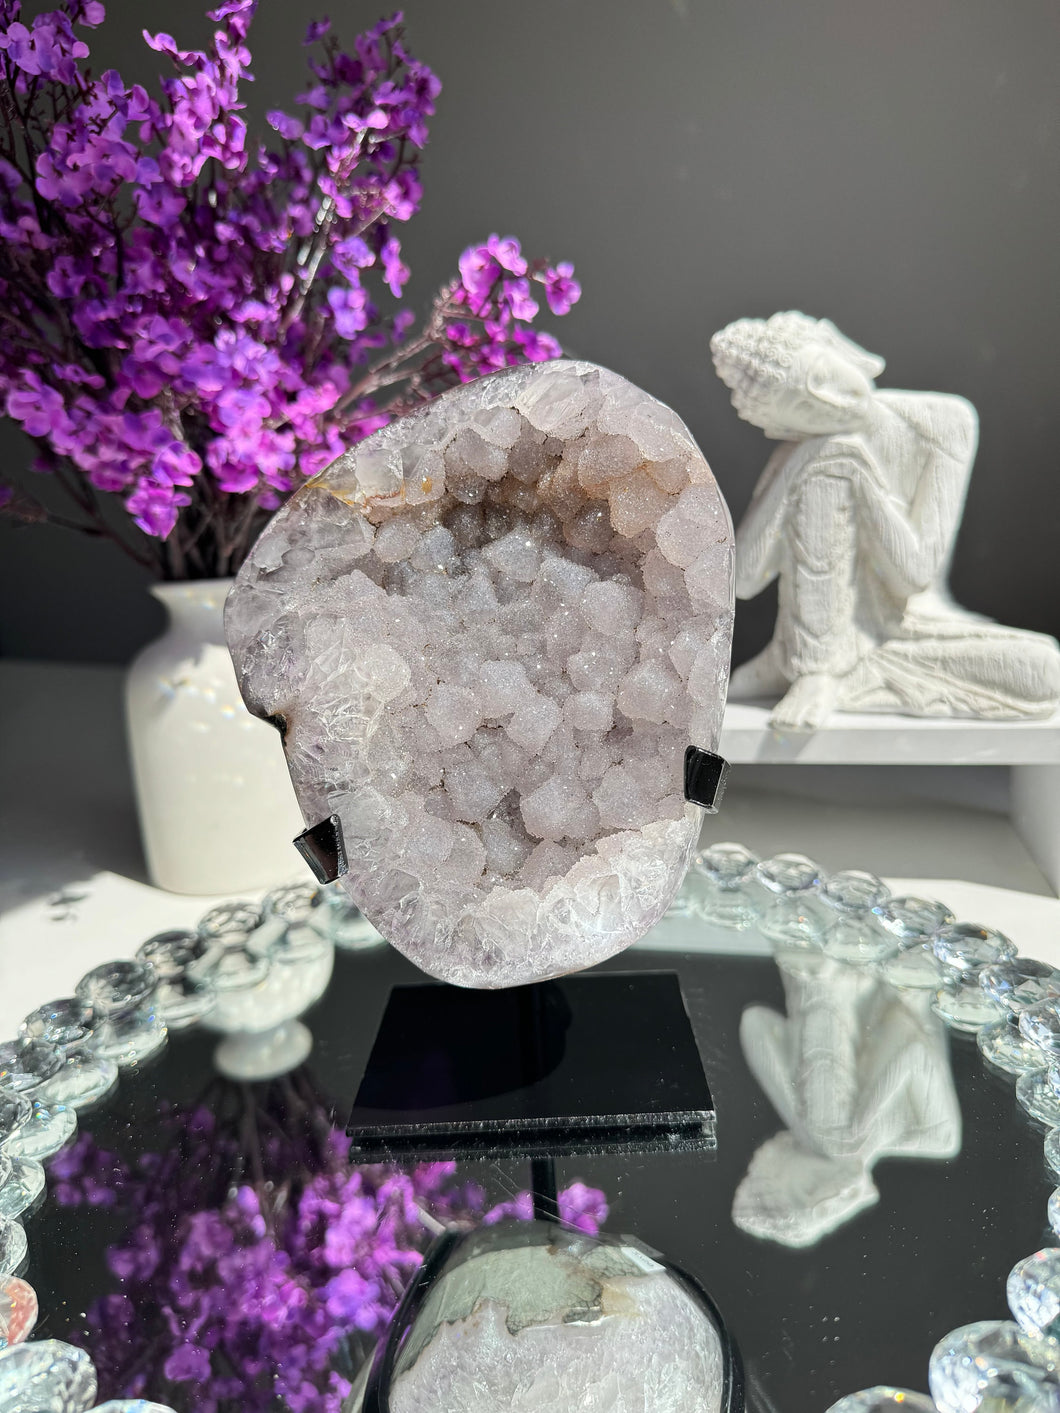 Lilac sugar Amethyst geode Healing crystals 2759